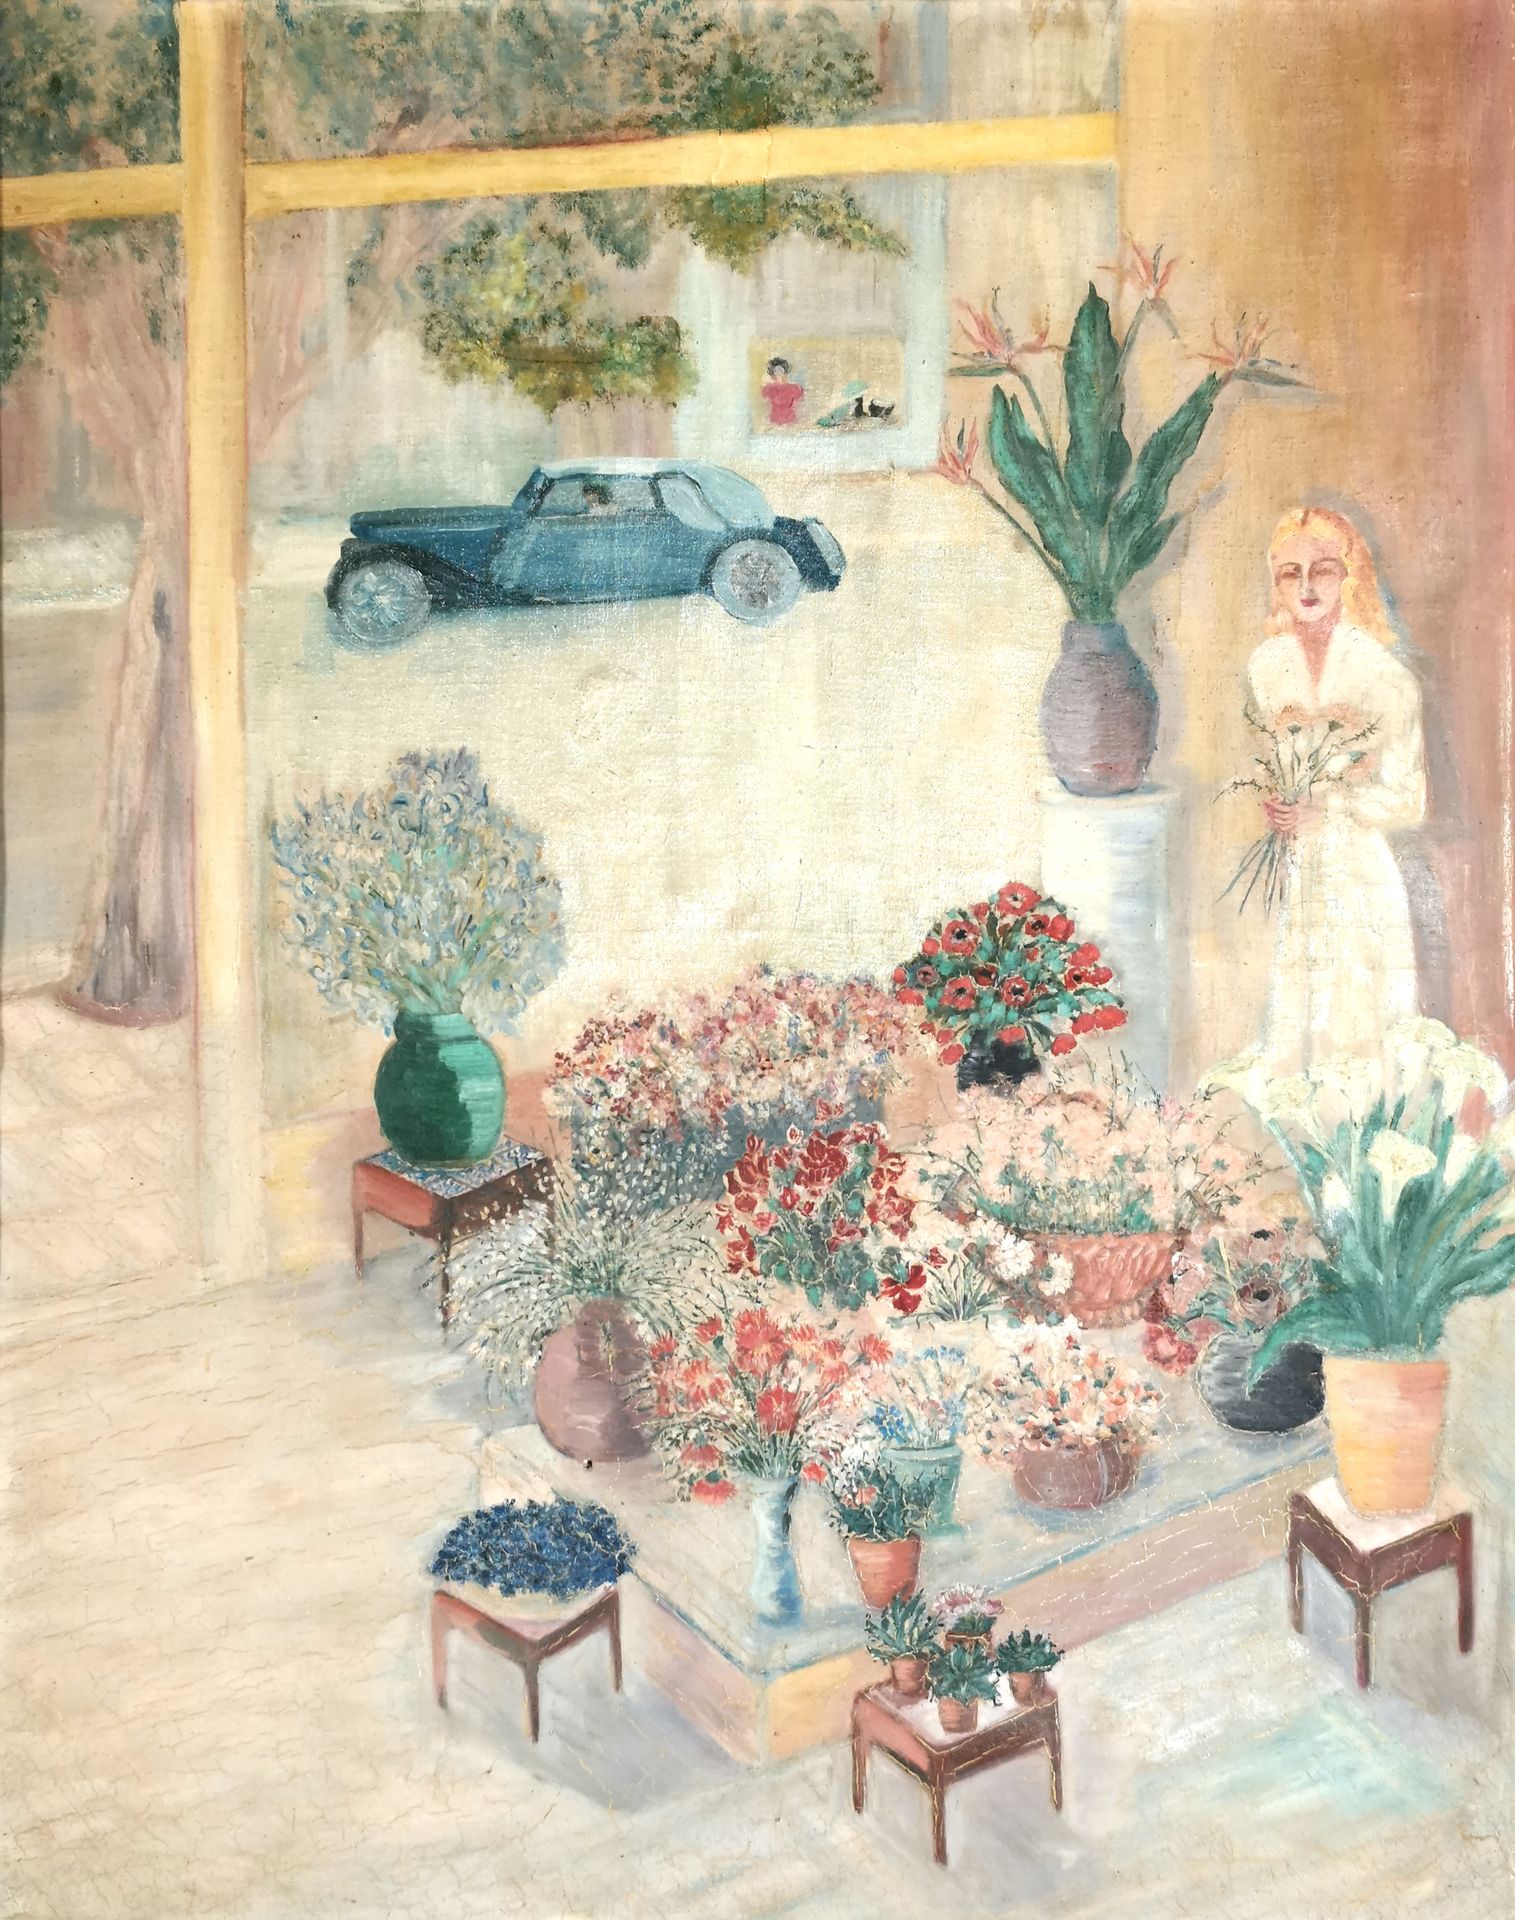 Null École du XXe siècle

La marchande de fleur

Huile sur toile 

88 x 70 cm

E&hellip;